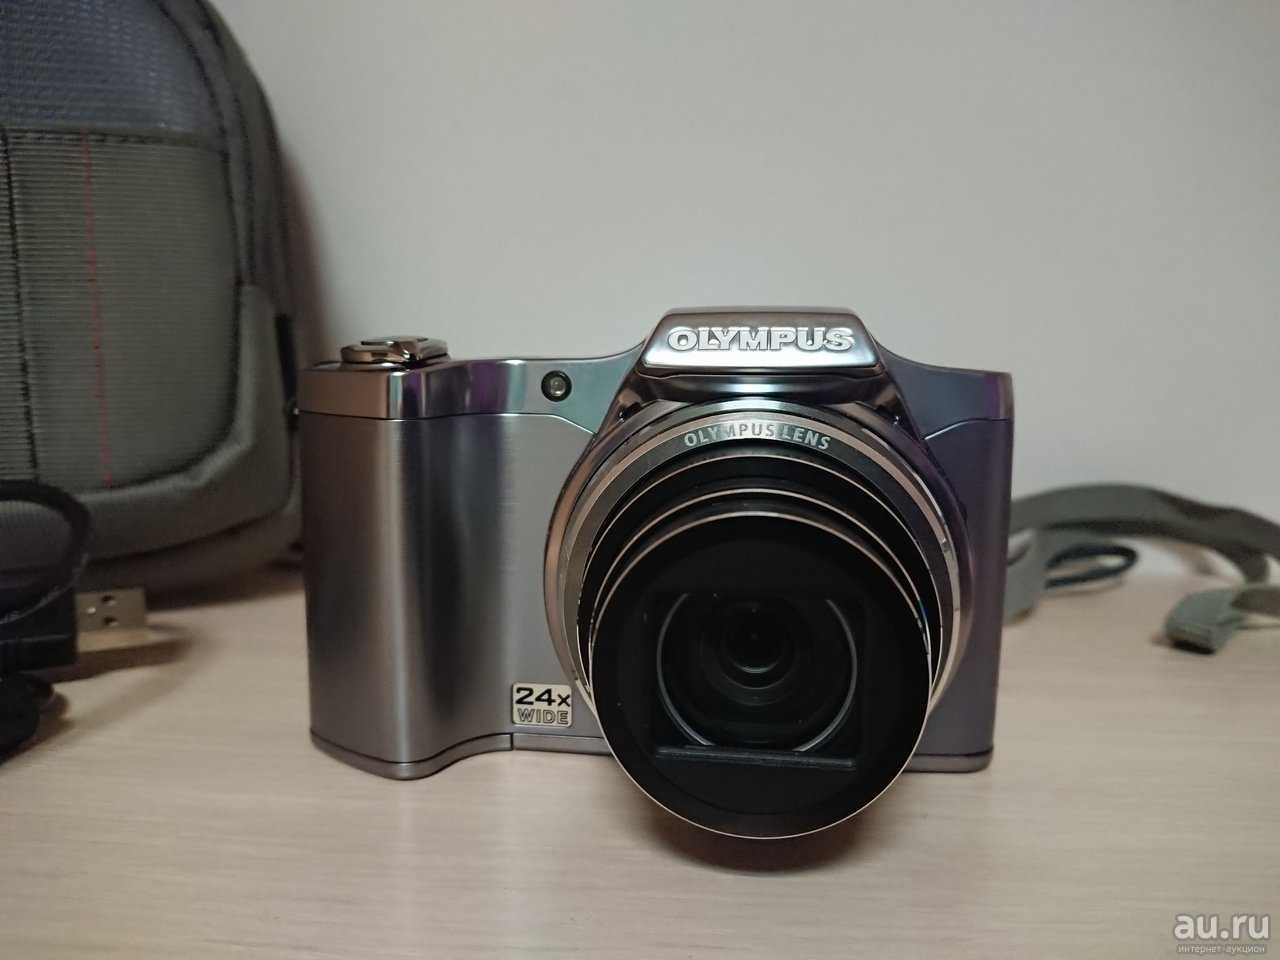 Olympus sz-16 (белый) - купить , скидки, цена, отзывы, обзор, характеристики - фотоаппараты цифровые